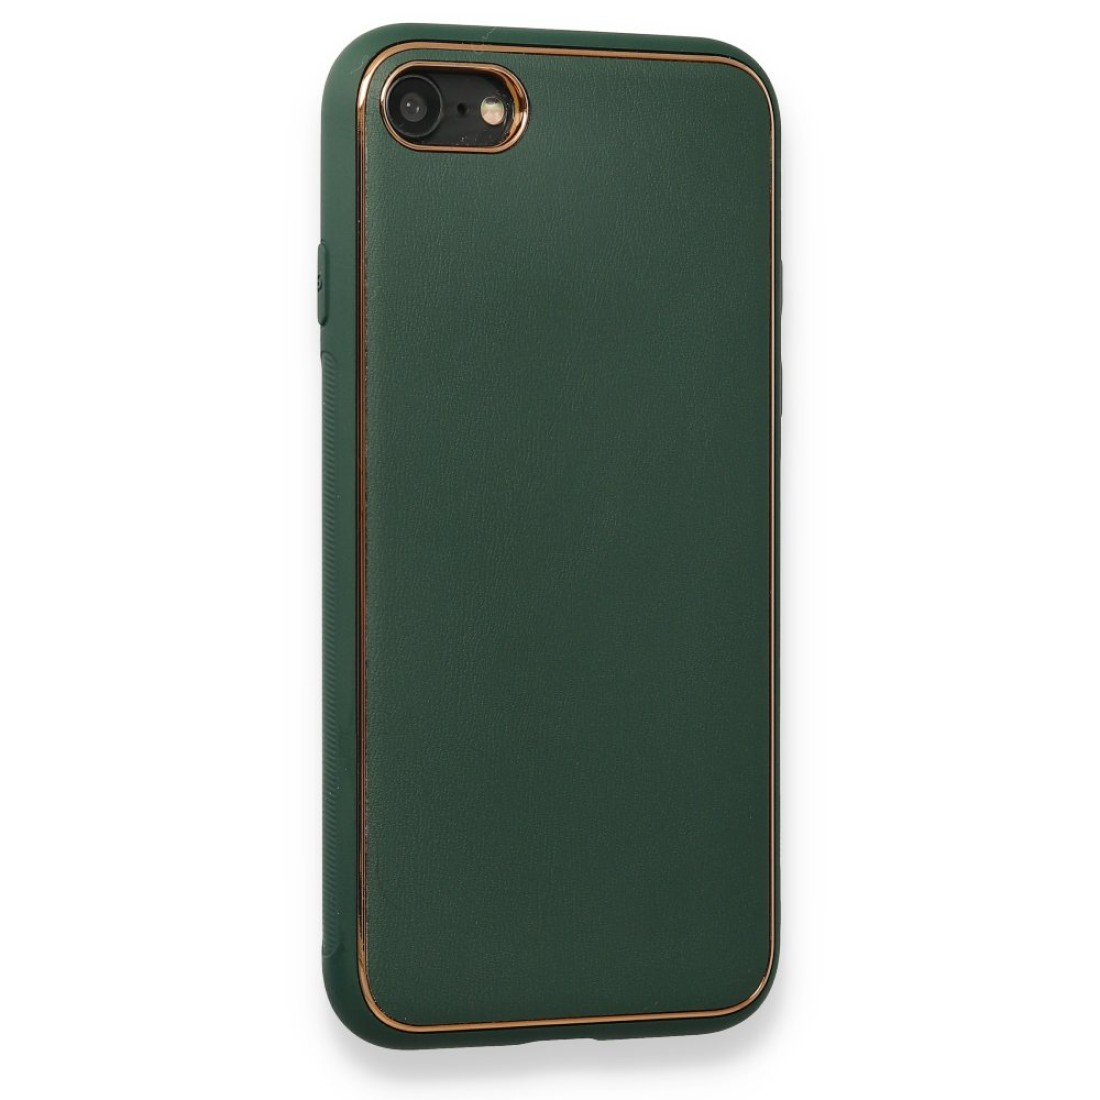 Apple iPhone 7 Kılıf Coco Deri Silikon Kapak - Yeşil